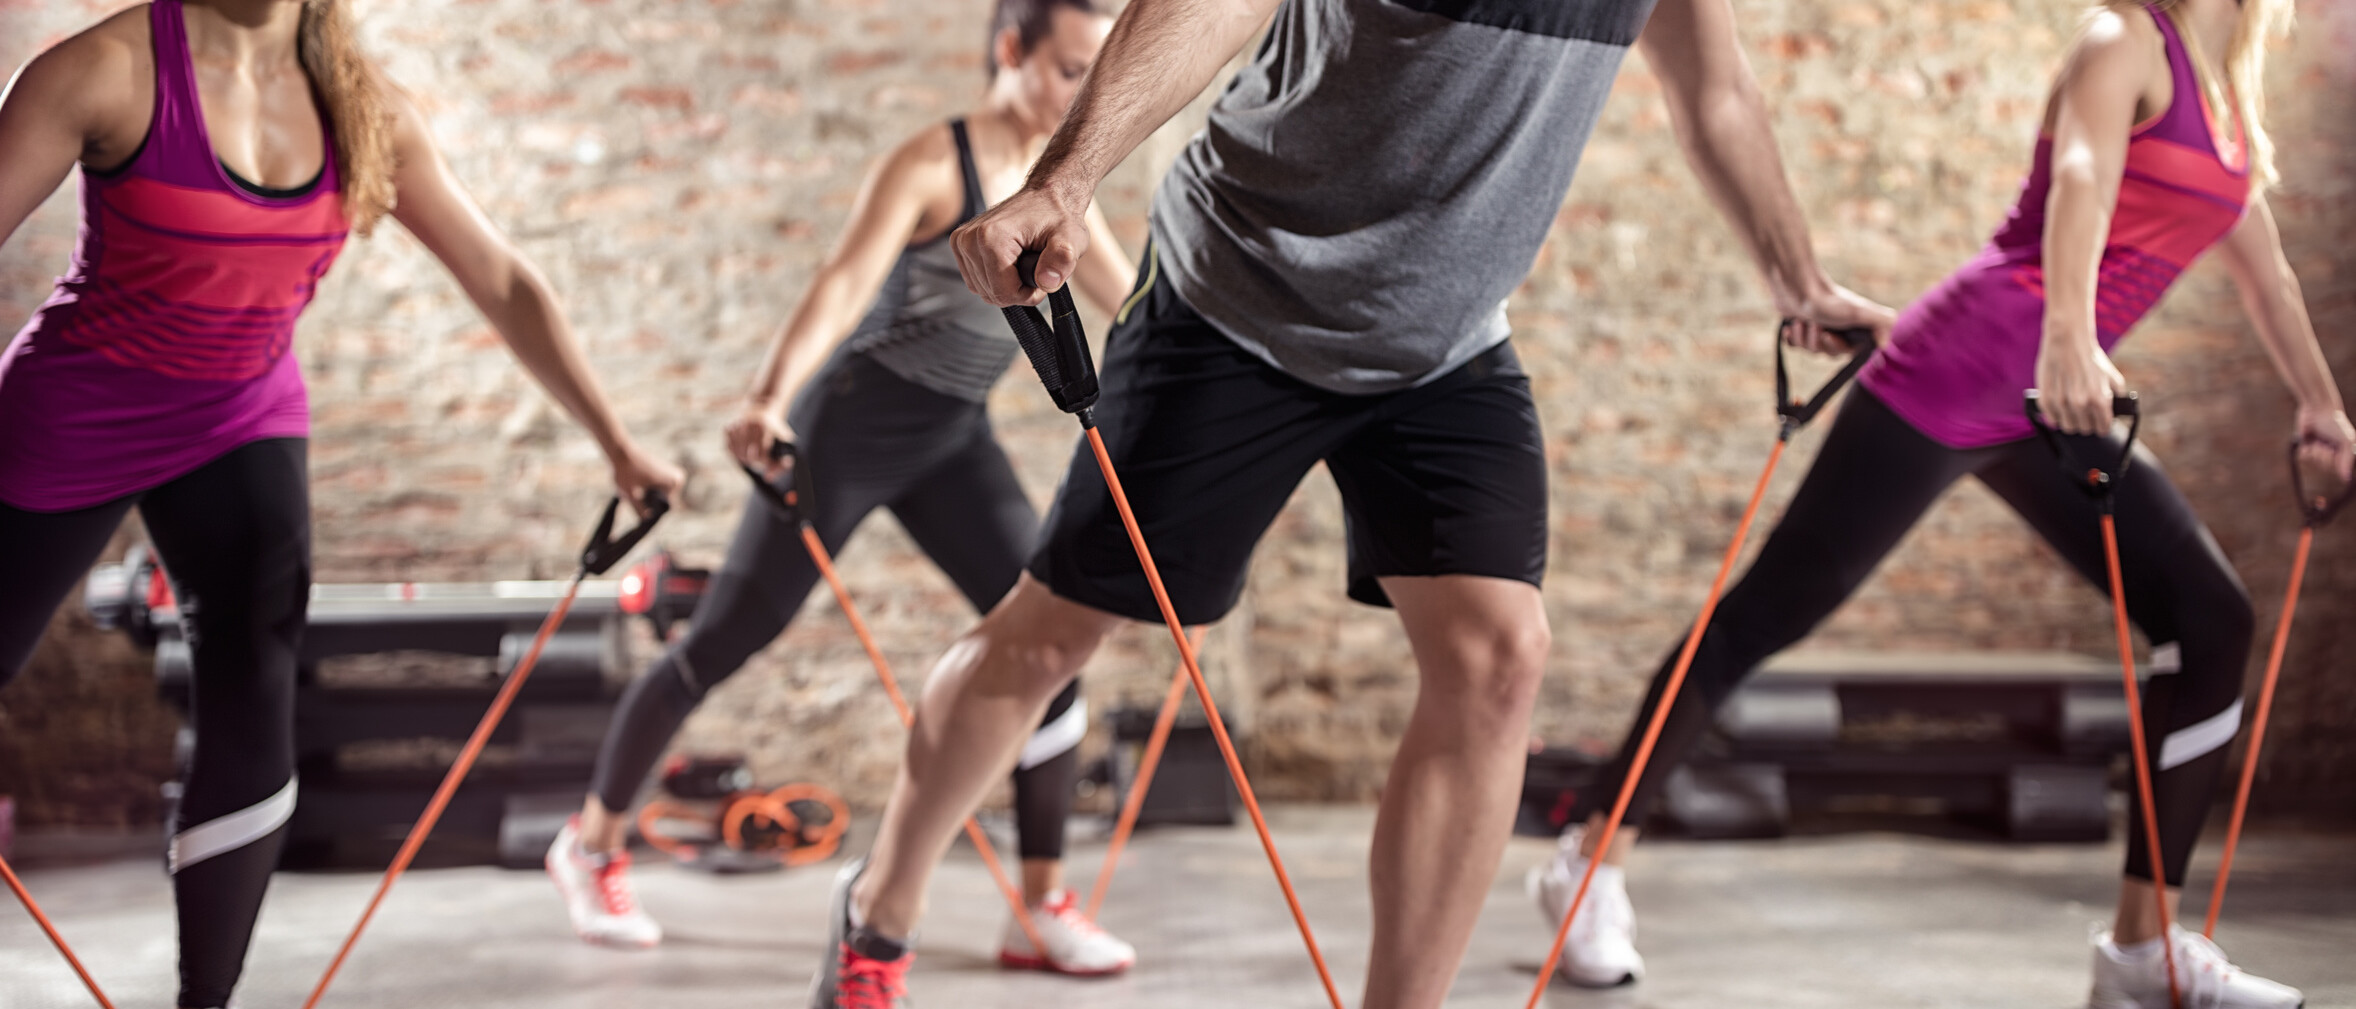 Sportliche Menschen, die mit Stretchingbändern trainieren